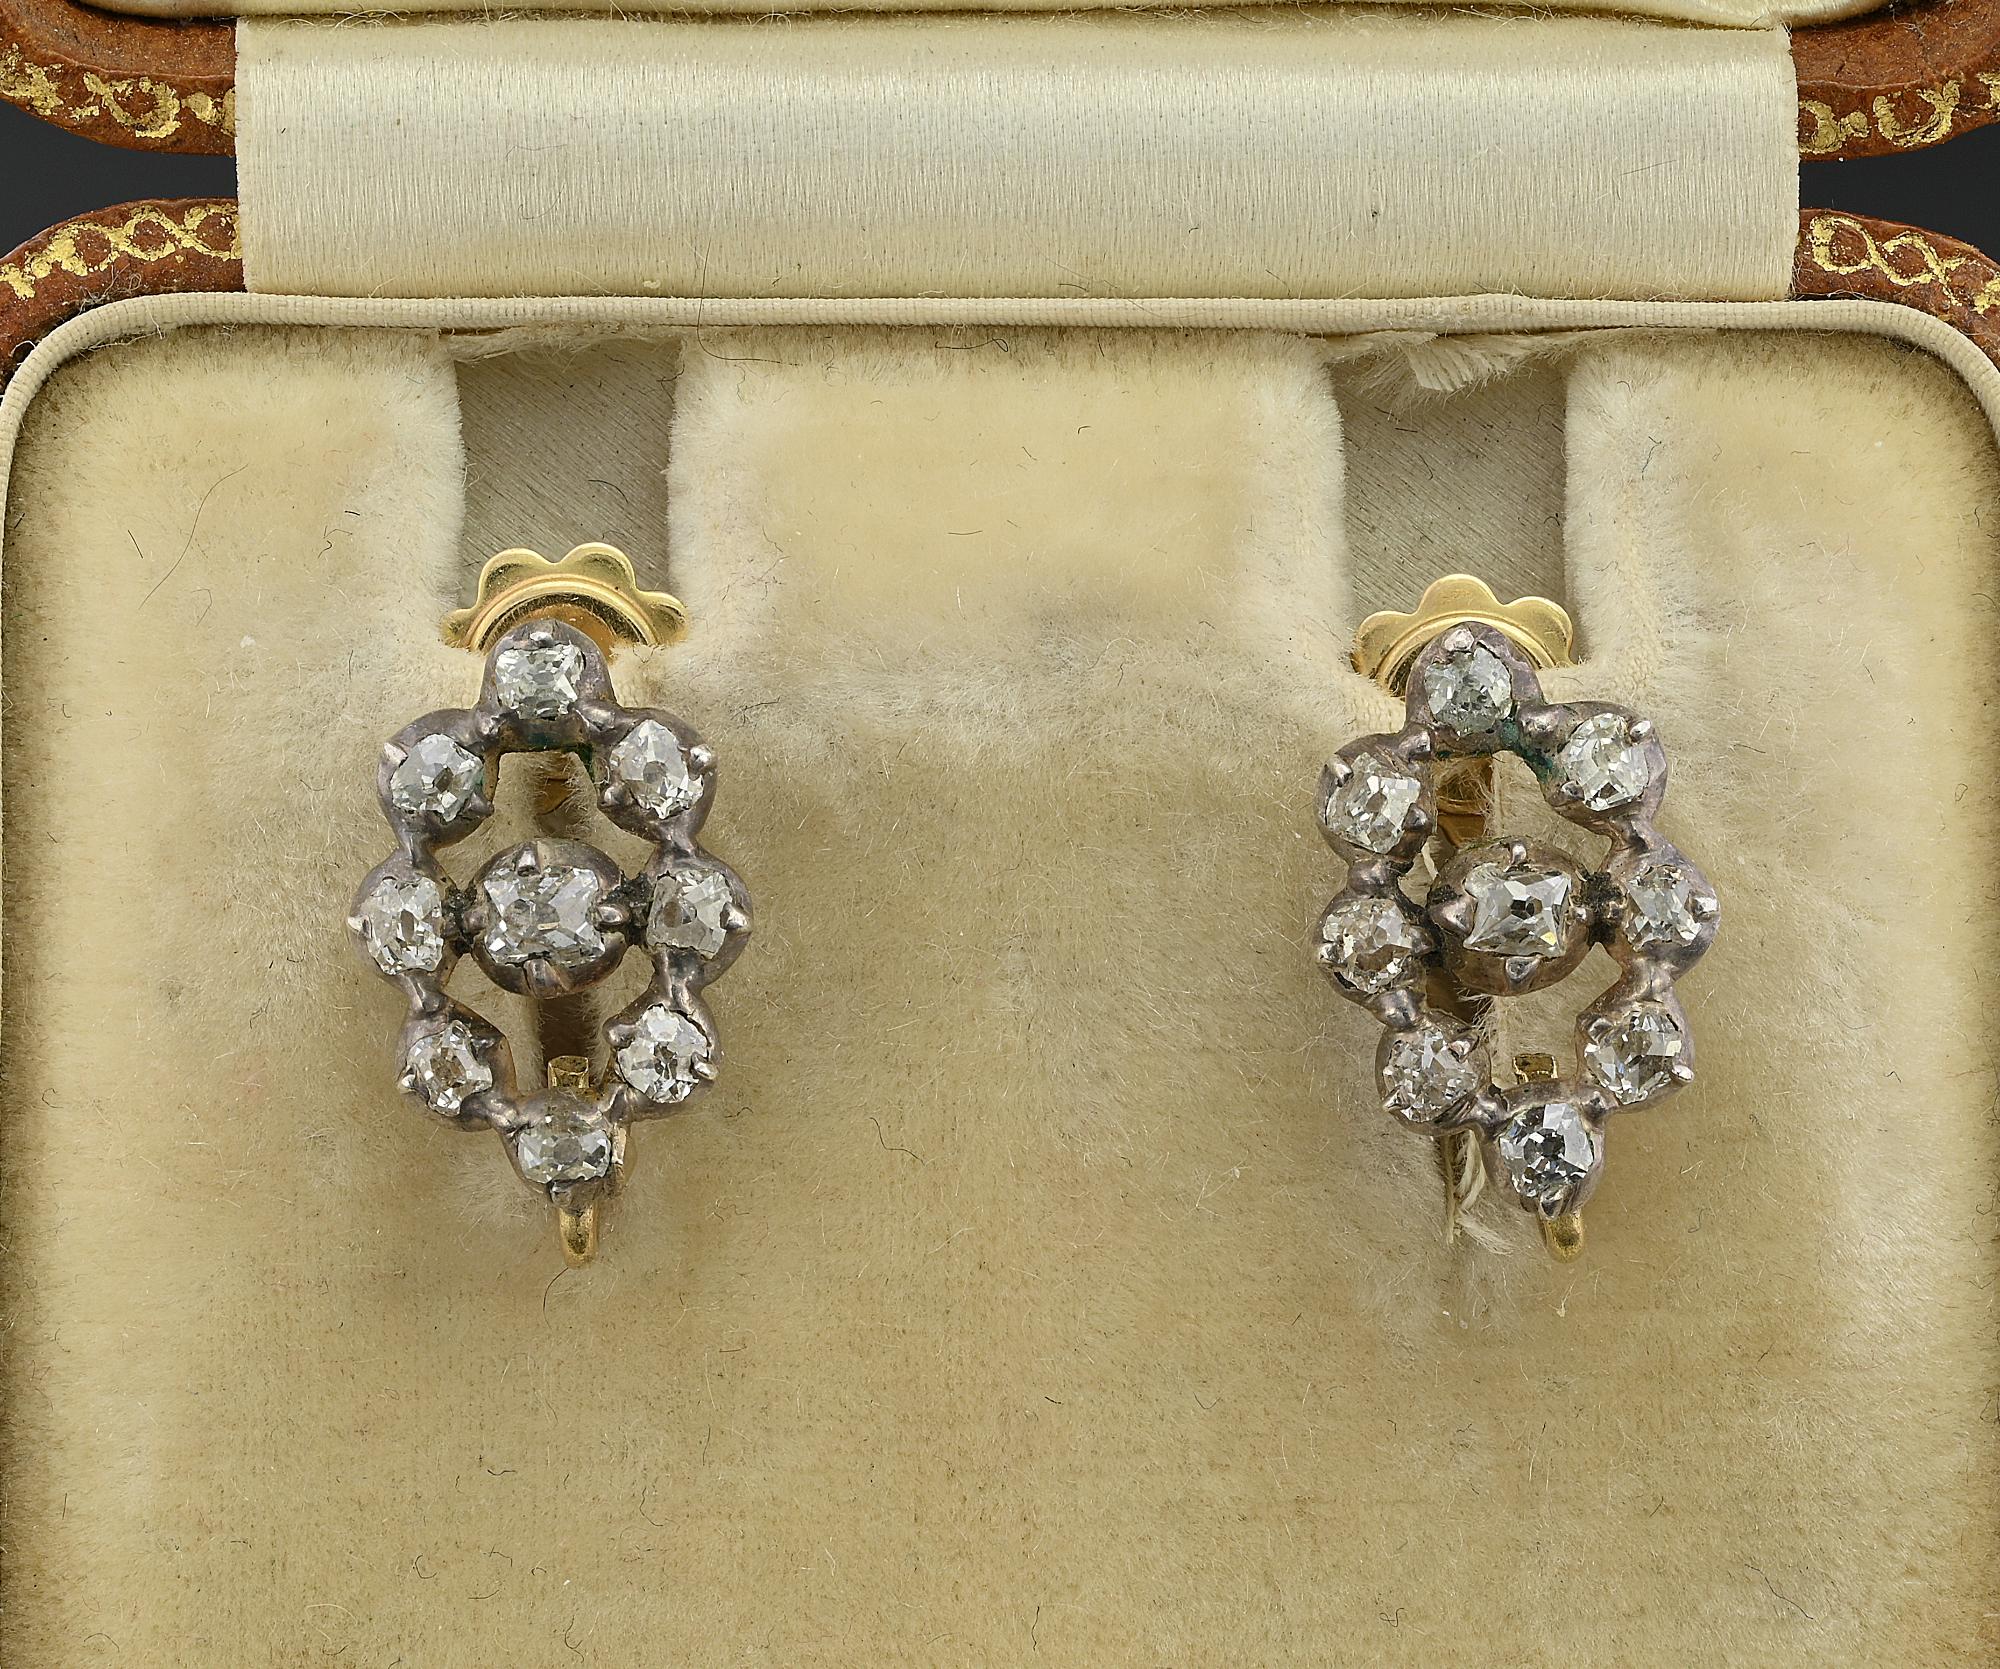 Ein außergewöhnliches Paar langer Ohrringe aus der georgianischen Ära um 1800
Handgefertigt aus Silber über massivem 15 KT Gold mit Ausnahme der Pfosten, die ein späterer, sehr alter Ersatz aus massivem 18 KT sind.
Fabelhaftes Design für Tag und